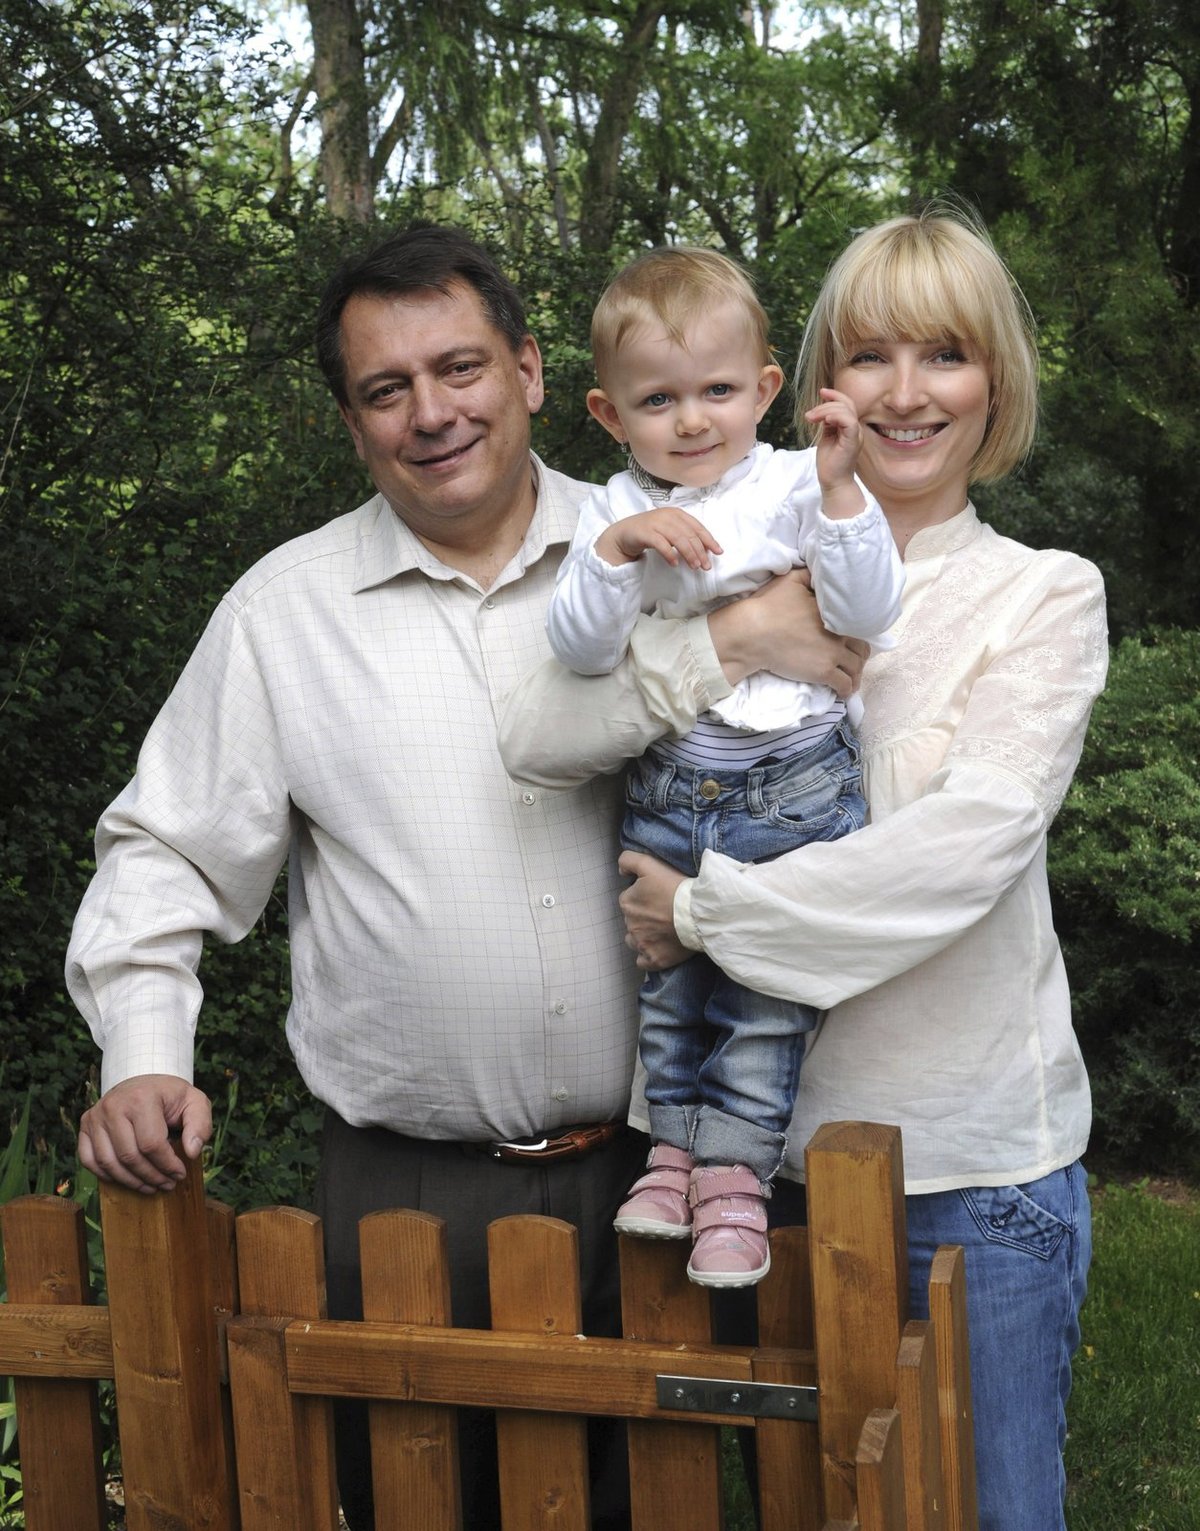 Červen 2011: Šťastná rodina. Tehdy působili Paroubkovi jako šťastná rodina, Jiří zahradničil a Petra ho vedla ke zdravému životnímu stylu.